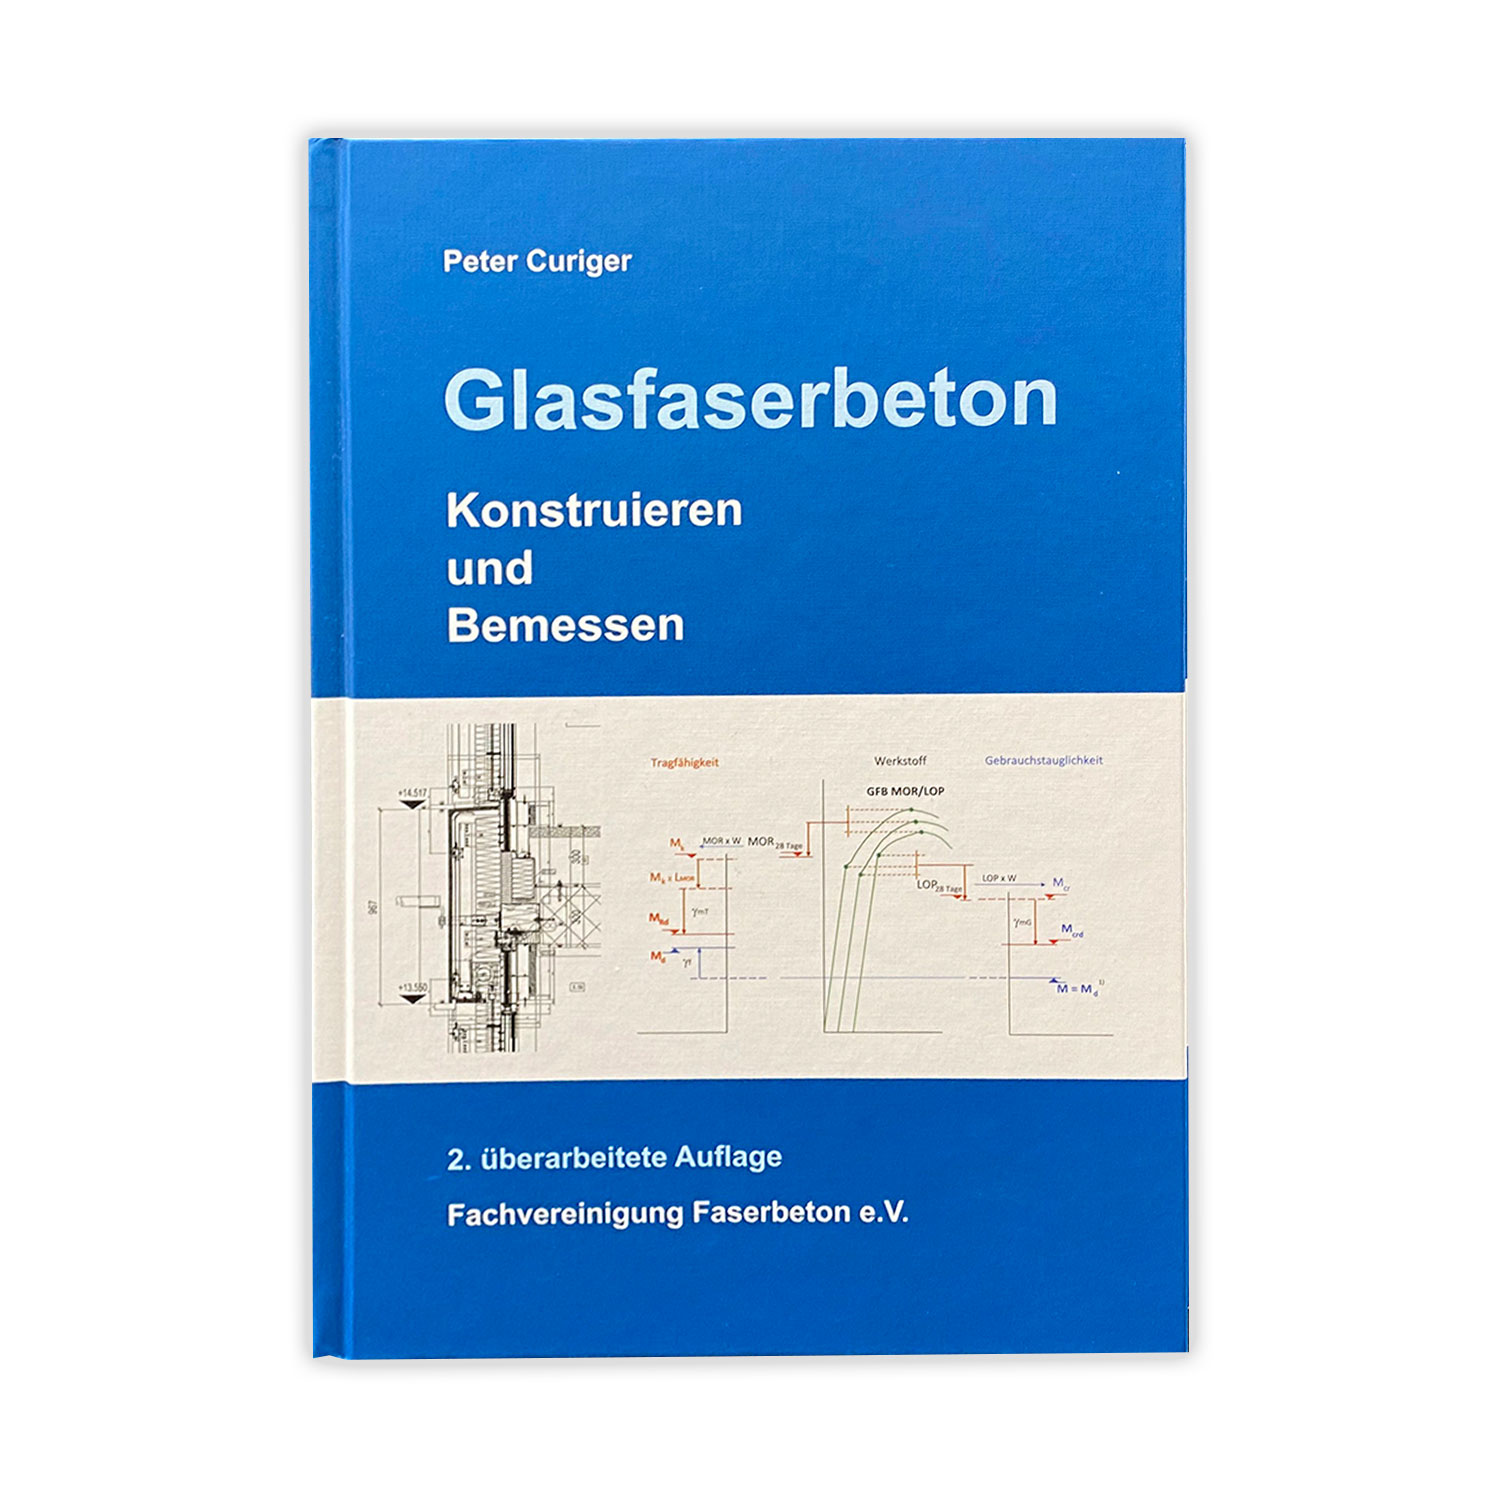 Fachbuch "Glasfaserbeton - Konstruieren und Bemessen" von Peter Curiger